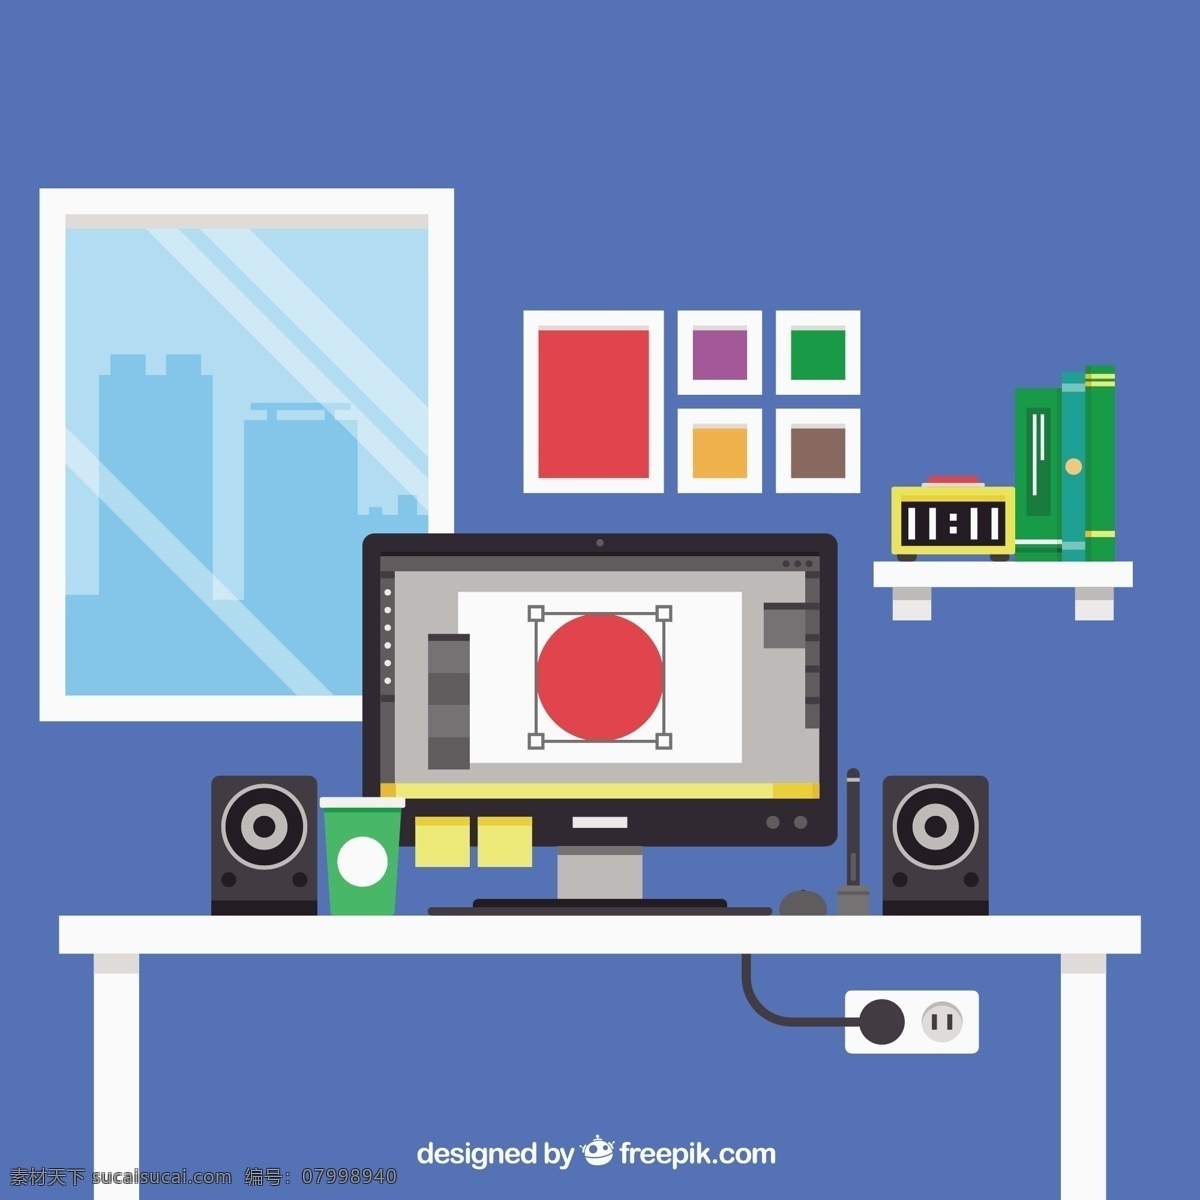 平面 设计师 工作 场所 办公 平面设计 桌面 办公桌 平面设计师 工作空间 工作场所 蓝色